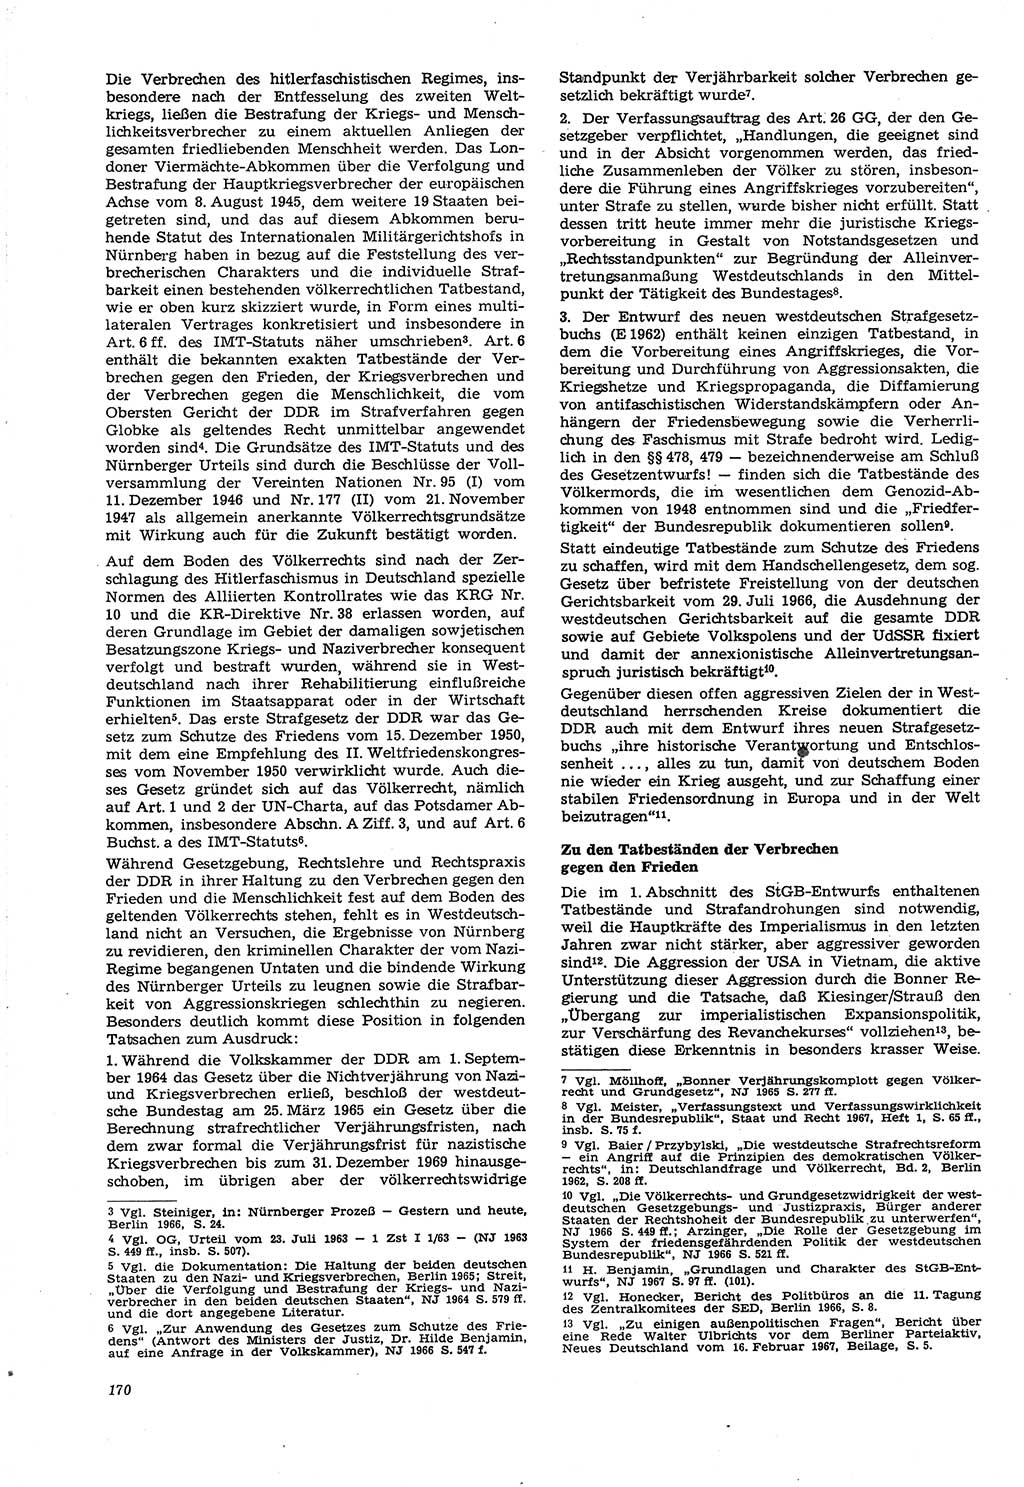 Neue Justiz (NJ), Zeitschrift für Recht und Rechtswissenschaft [Deutsche Demokratische Republik (DDR)], 21. Jahrgang 1967, Seite 170 (NJ DDR 1967, S. 170)